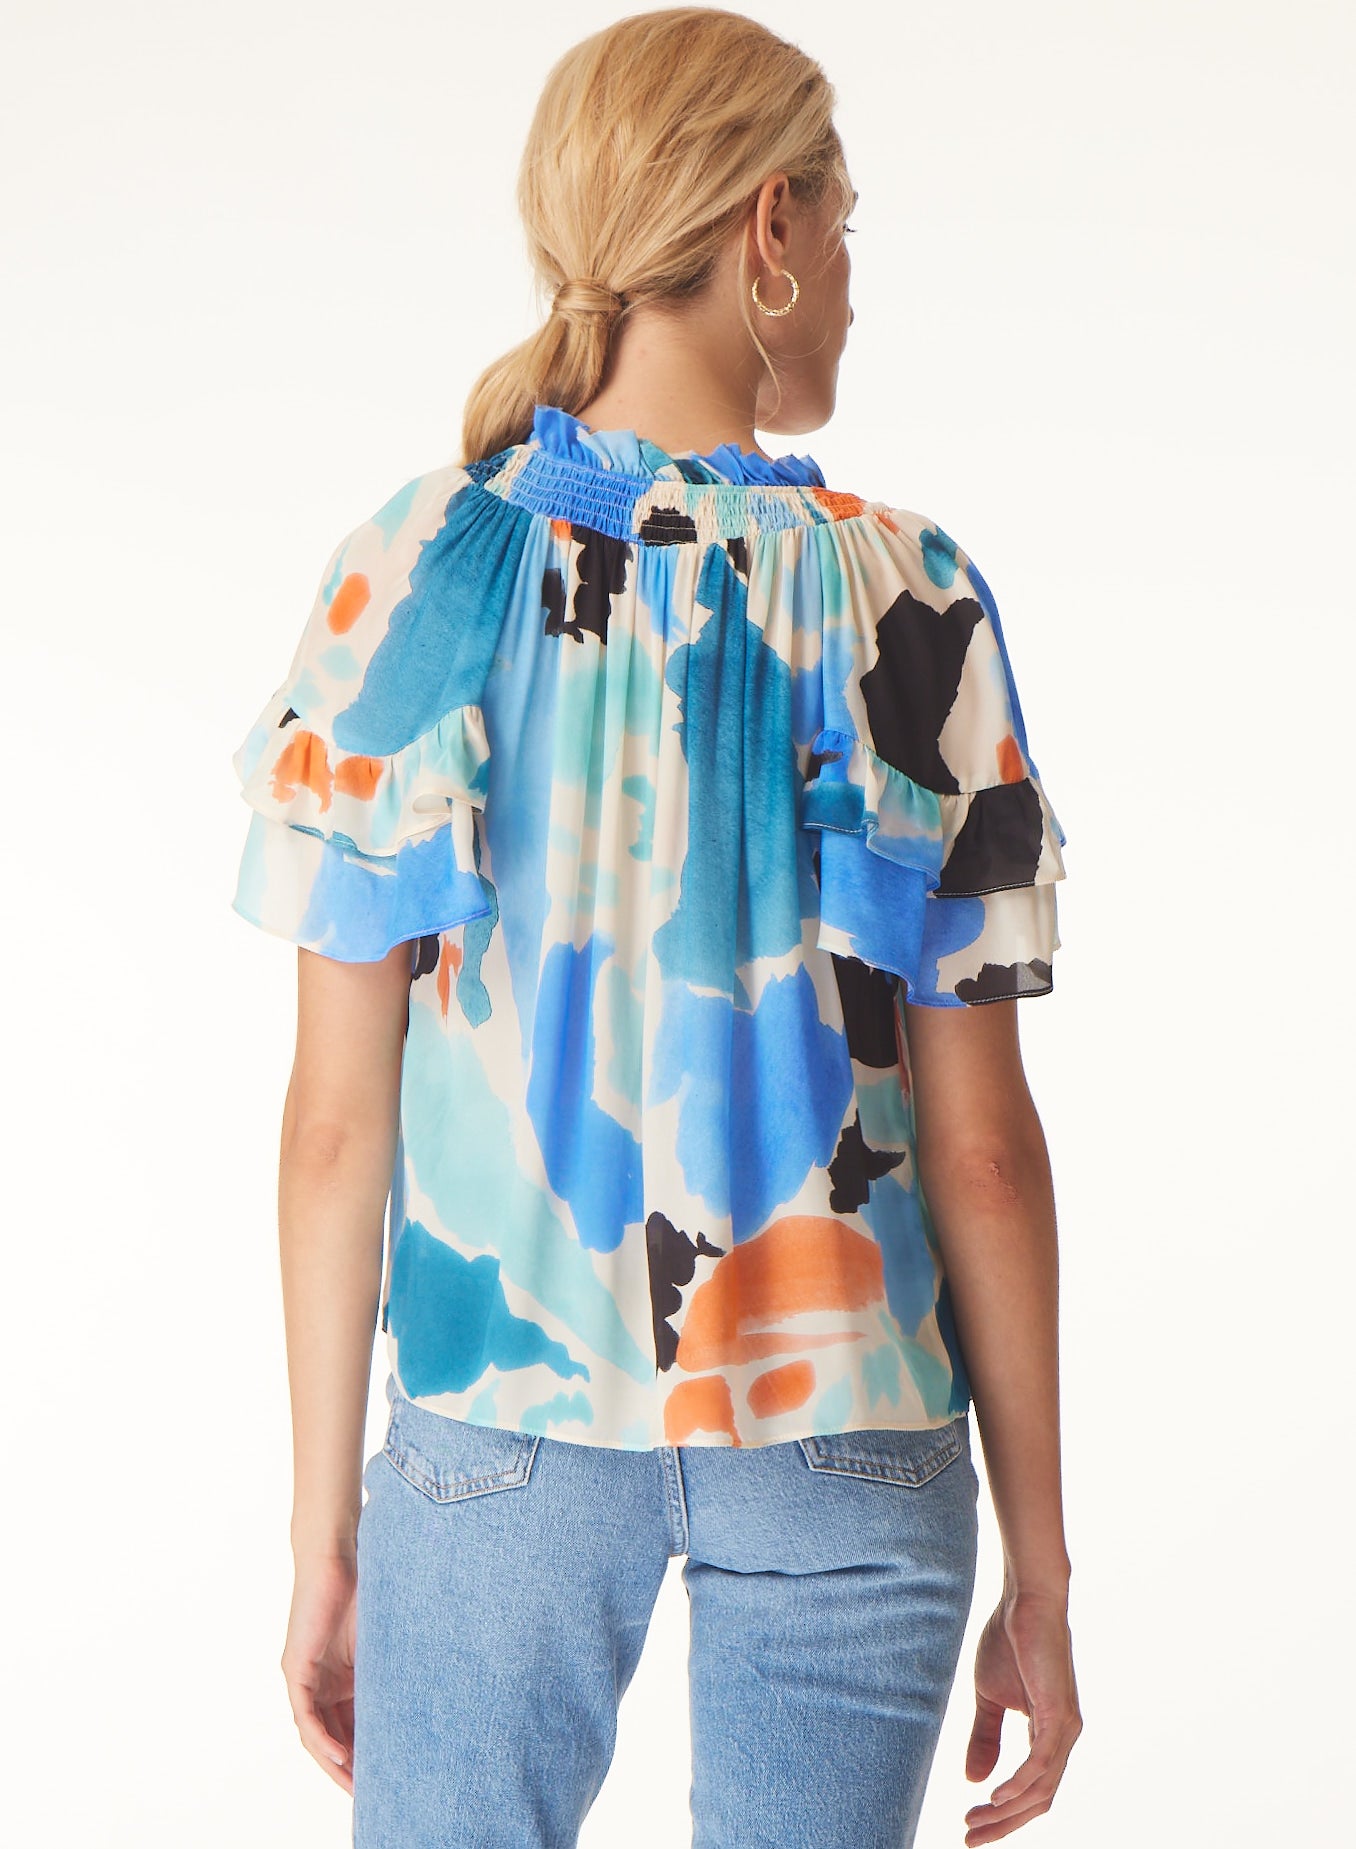 Sky blouse in Matisse print - Gilner Farrar